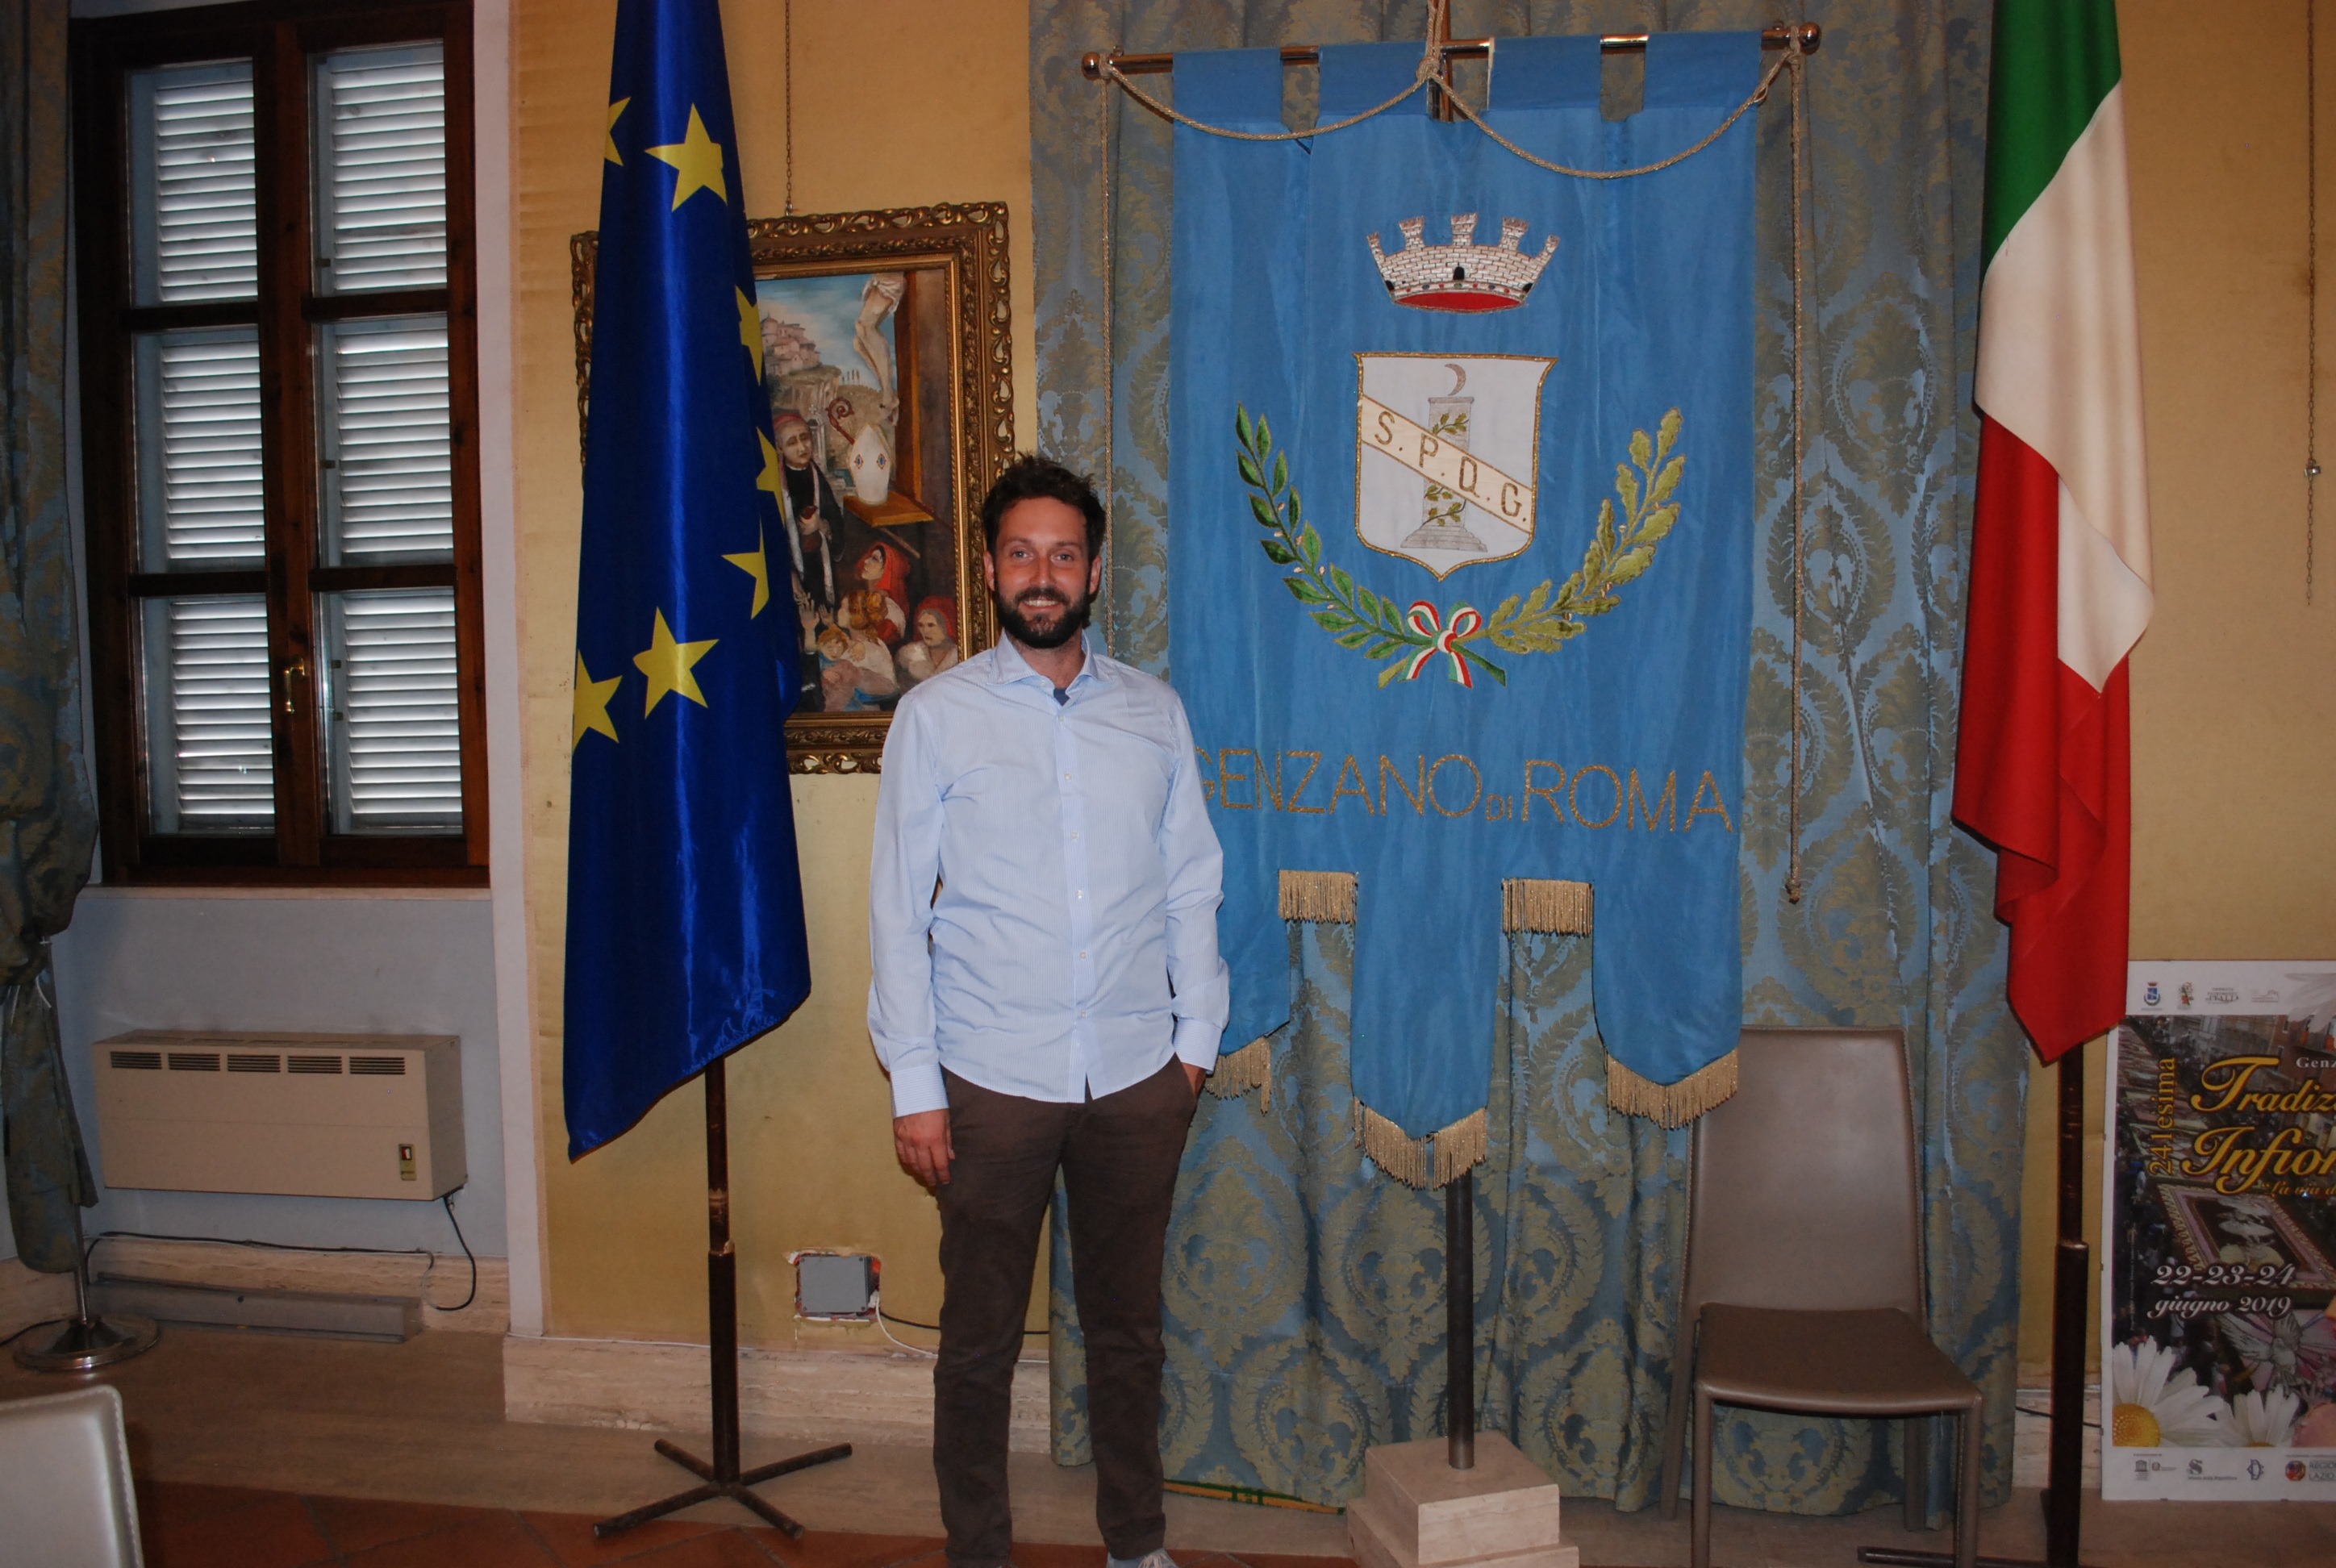 L'ingresso di Carlo Zoccolotti in Comune, da sindaco di Genzano